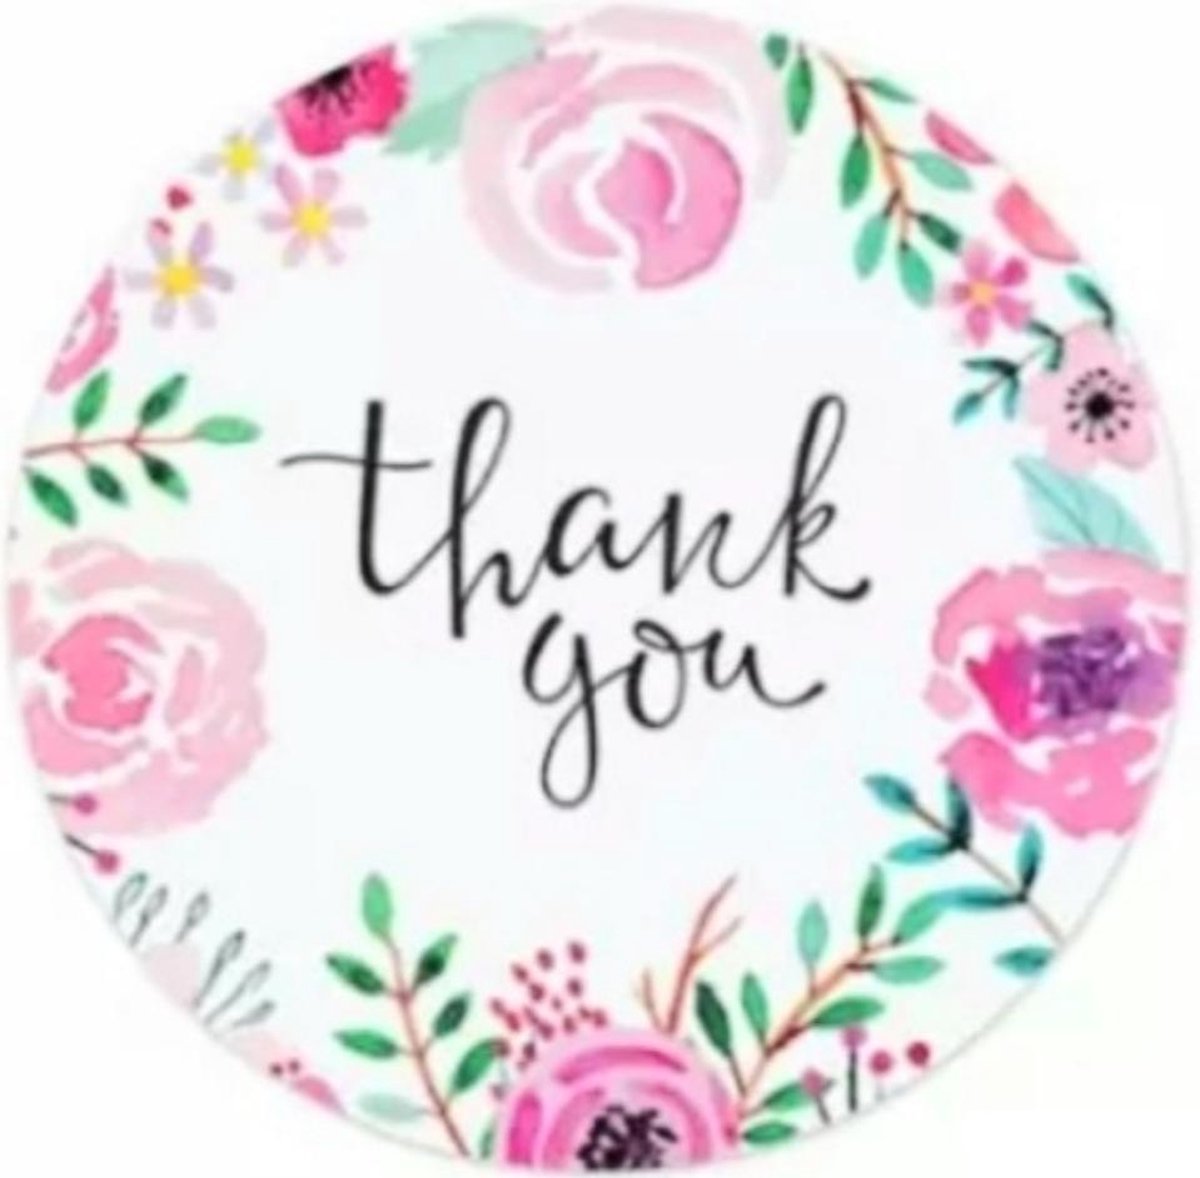 Stickers rond Multiplaza "THANK YOU" - 50 stuks - Etiketten - bloemen - bedankt - promoten bedrijf - flowers - hobby - bedrijf - webshop - bestellingen - brief - pakket